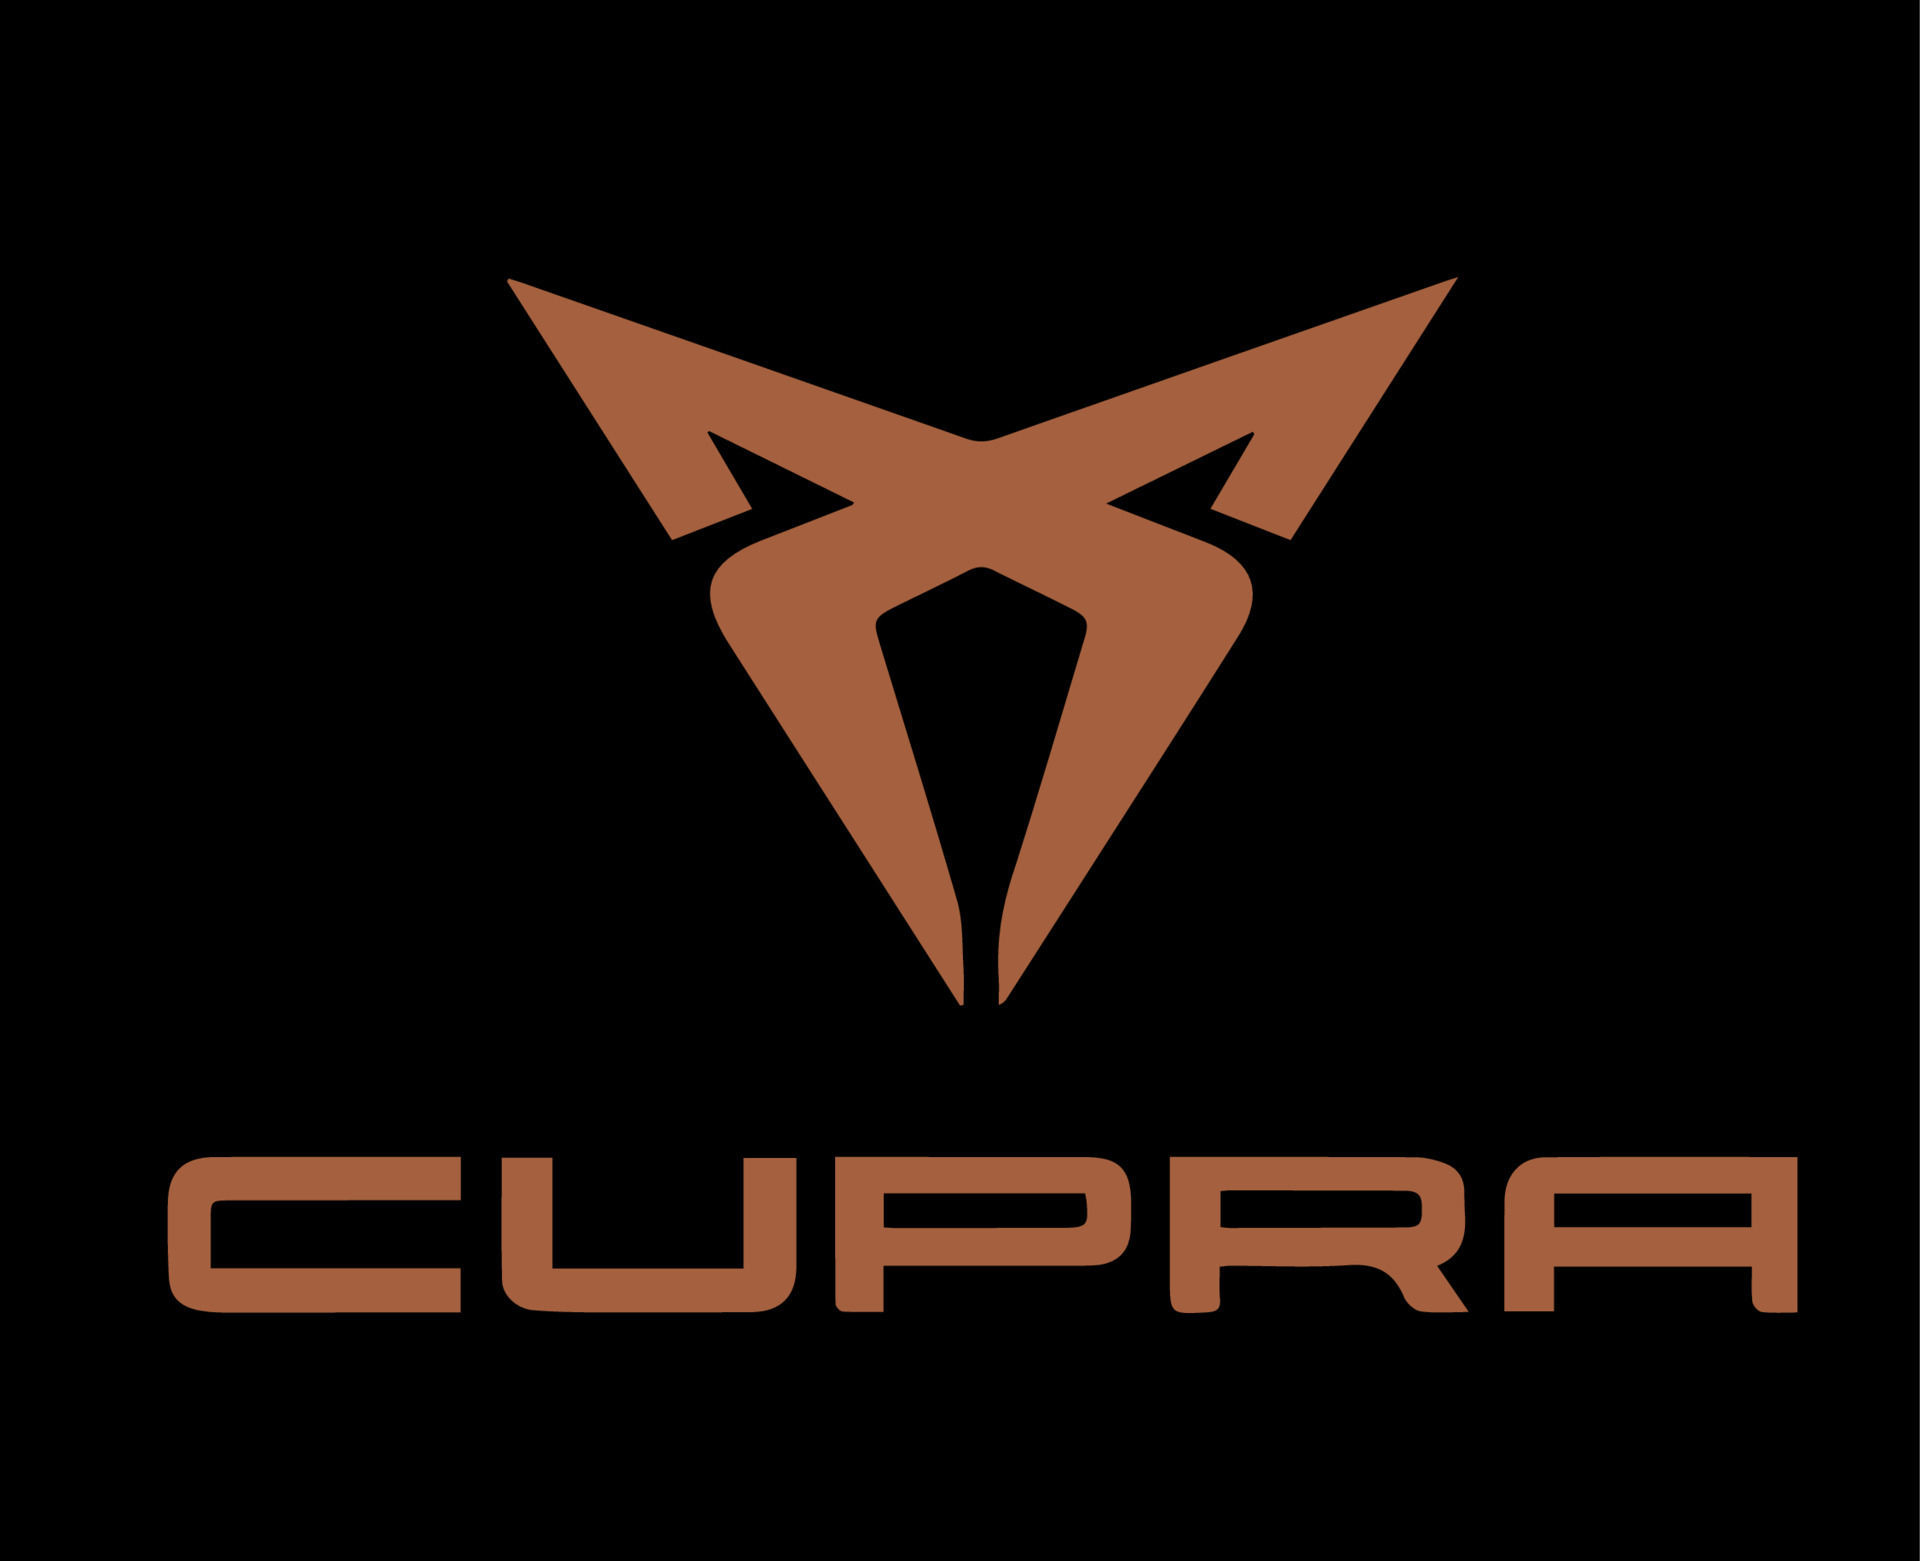 Logo Cupra: Hãy tìm hiểu thêm về thương hiệu xe Cupra đầy thú vị với hình ảnh logo Cupra tinh tế và bắt mắt này. Được thiết kế bởi đội ngũ chuyên nghiệp, Cupra đã trở thành sự lựa chọn hàng đầu của nhiều tín đồ đam mê chinh phục đường đua.